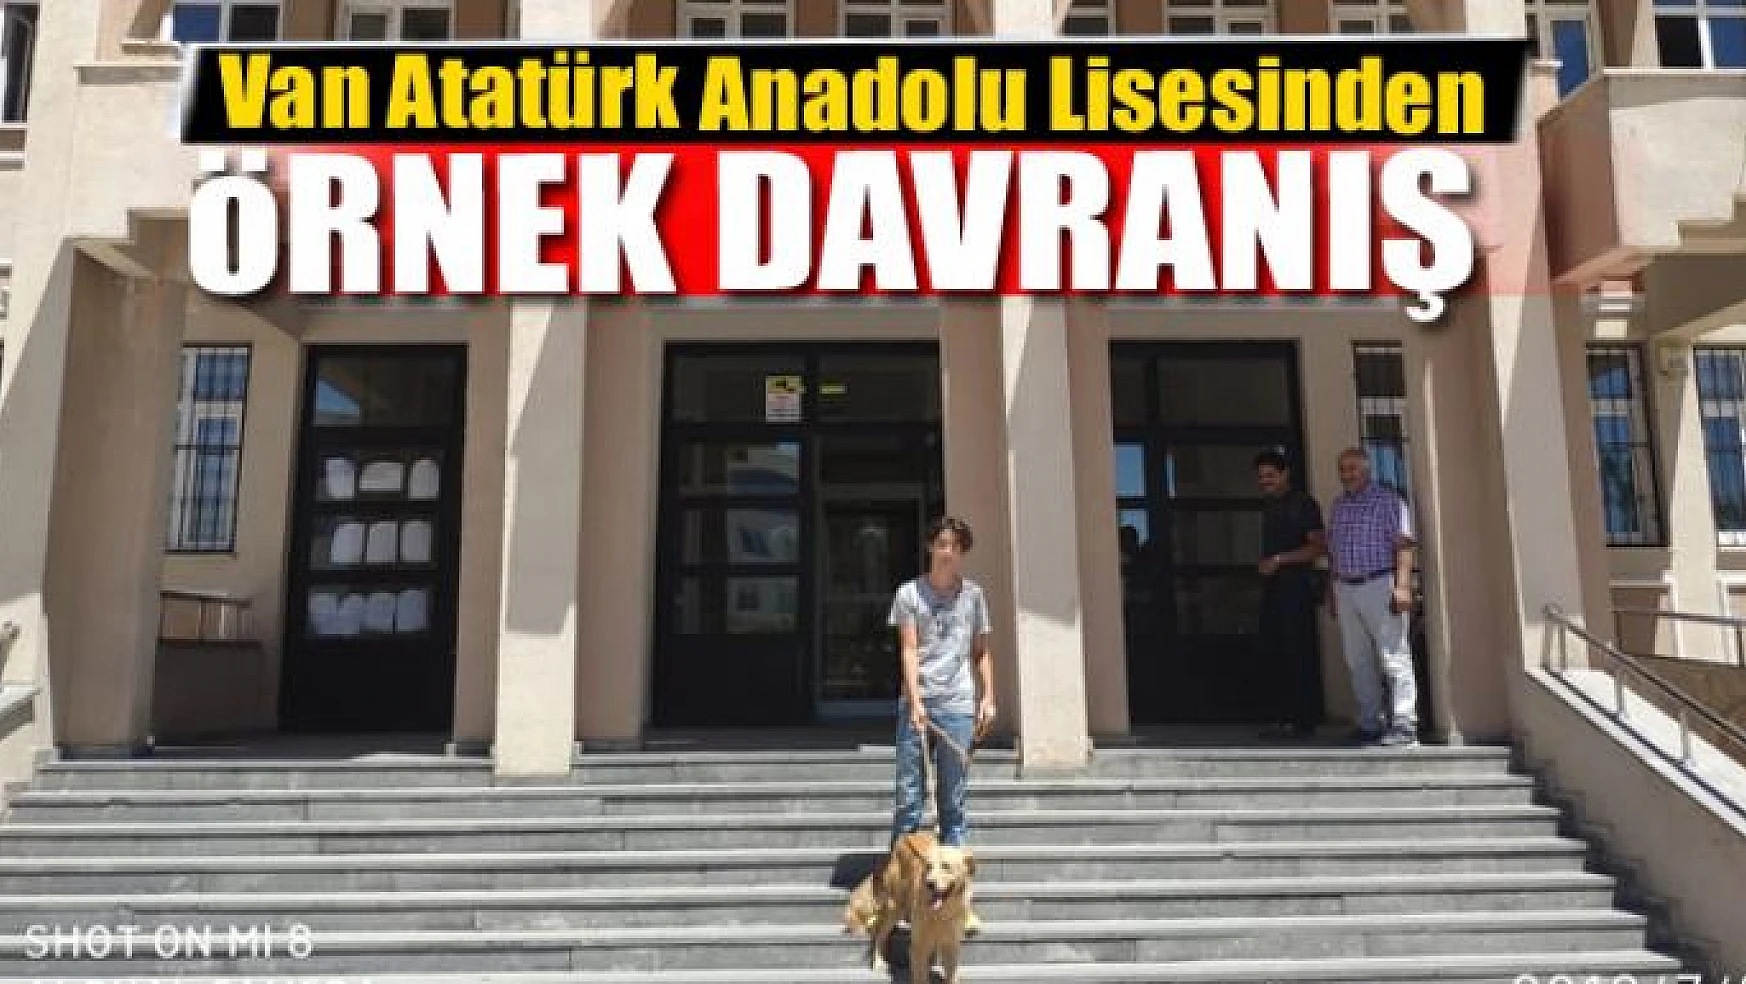 Van Atatürk Anadolu Lisesinden Örnek Davranış